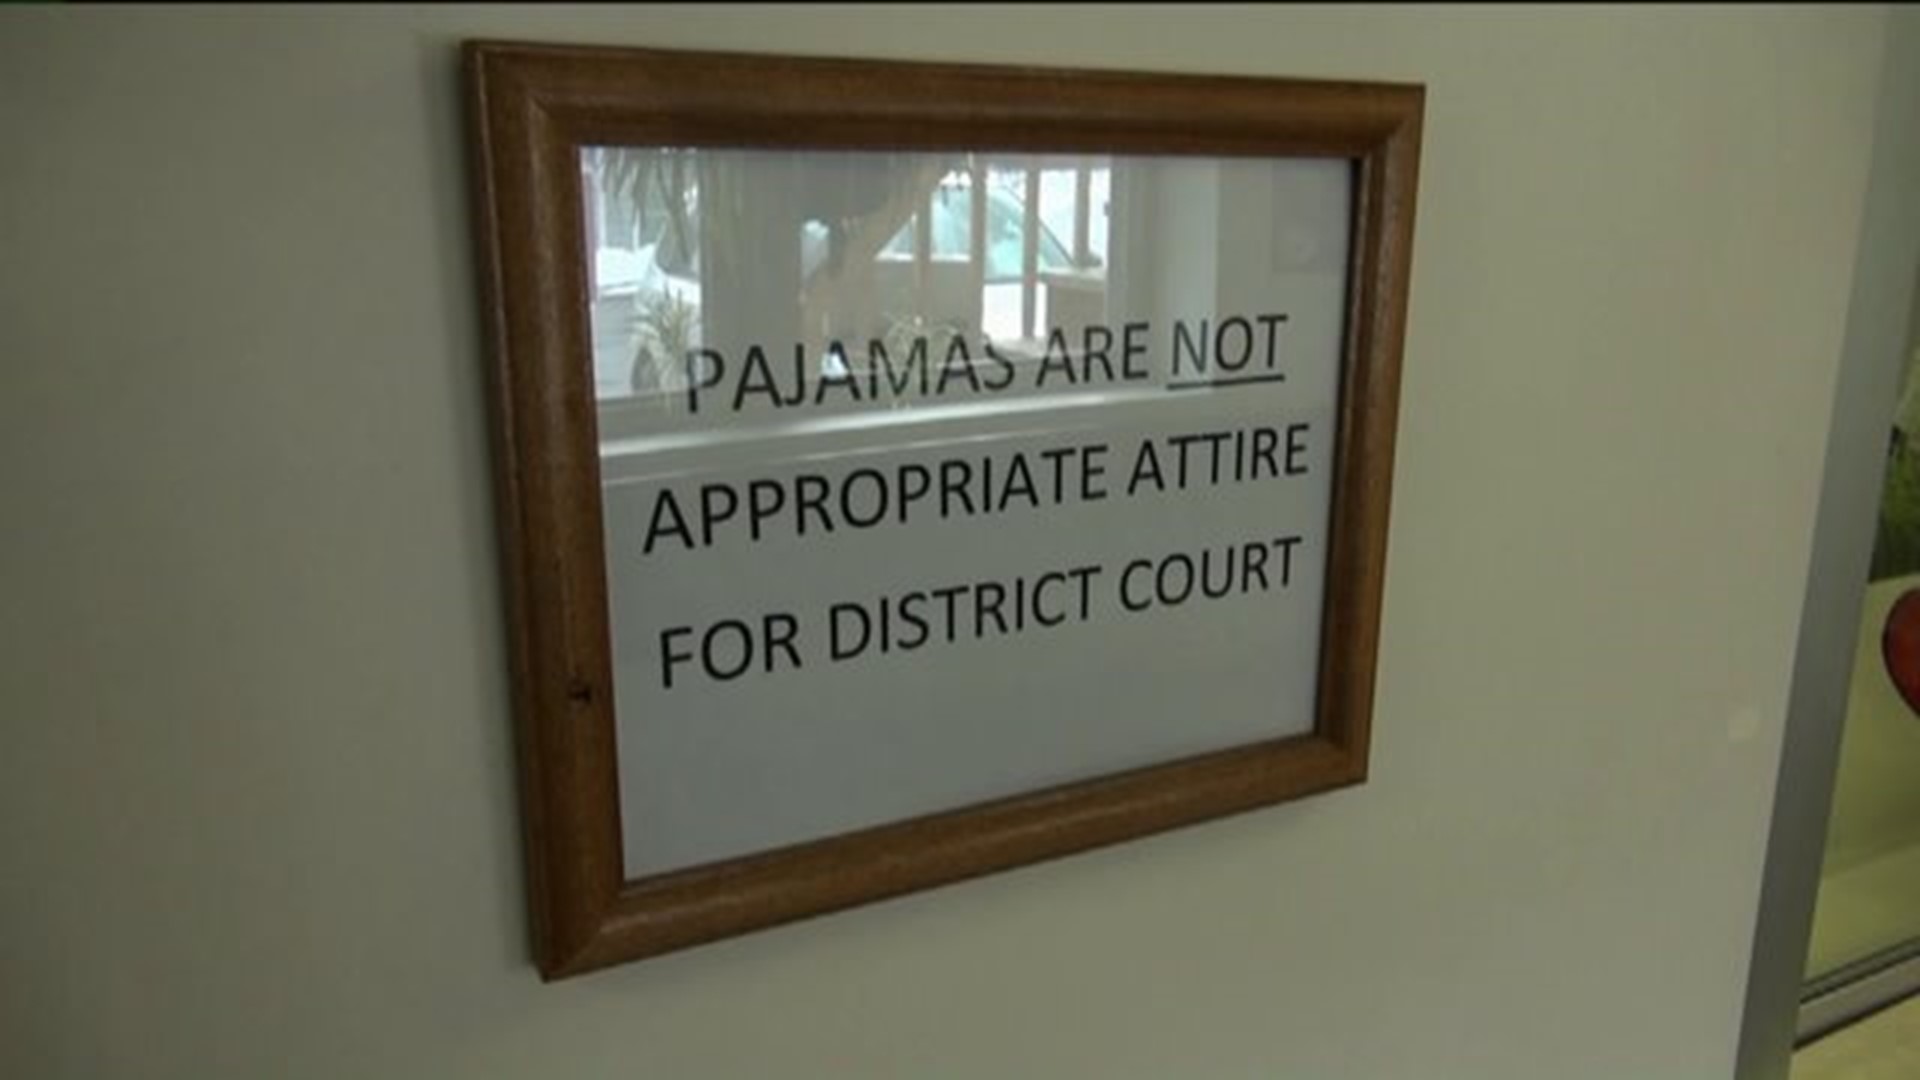 Judge: No Pajamas in My Courtroom!